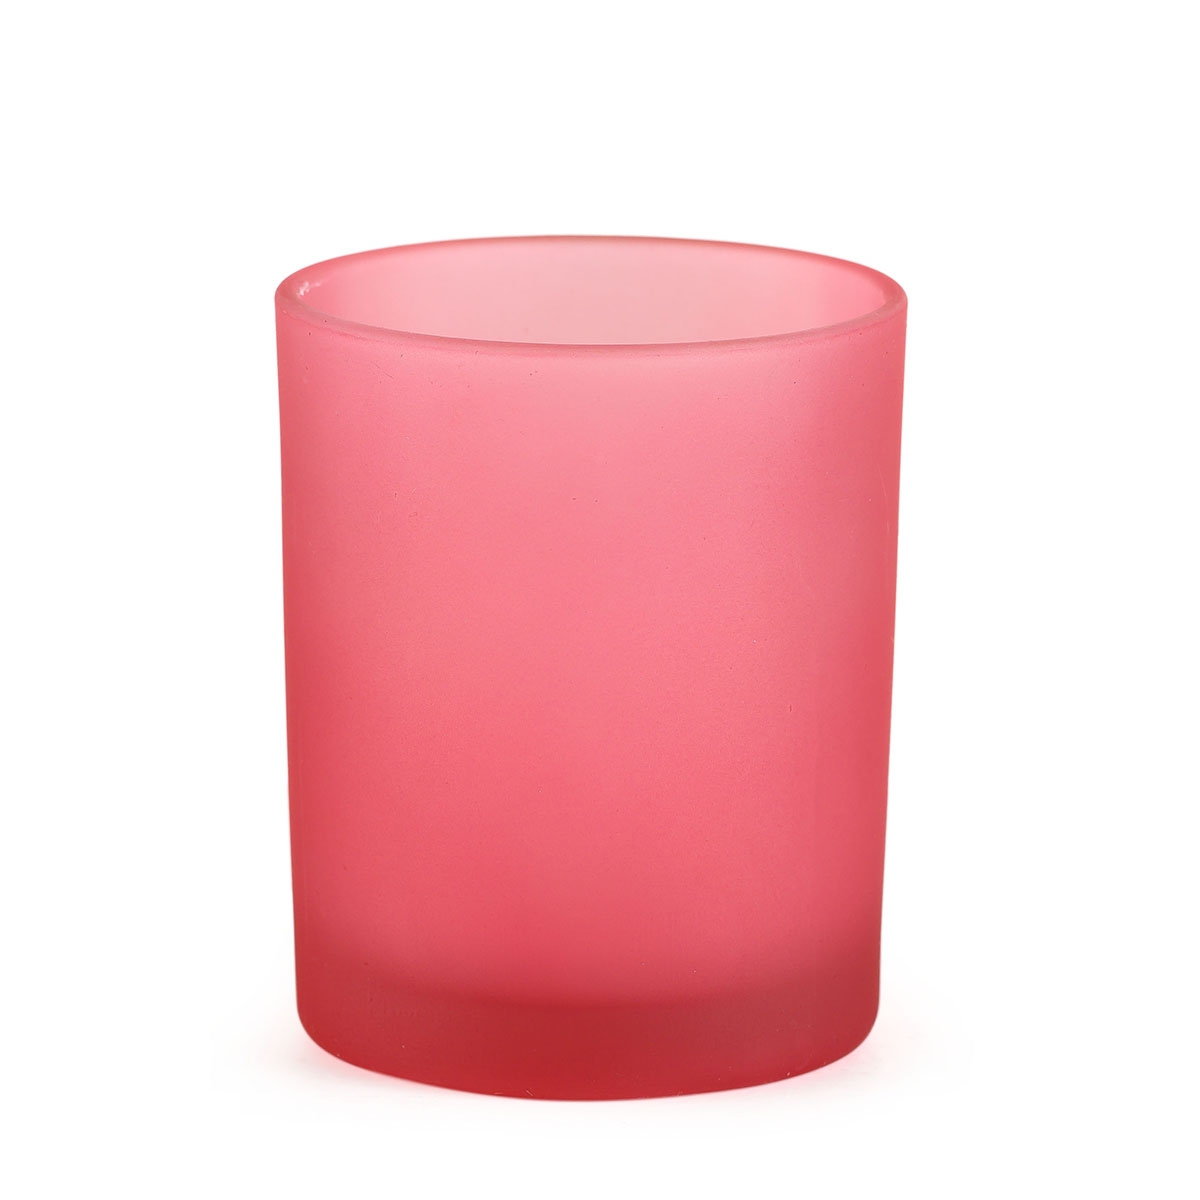 Votivglas frostig rosa H 65 mm Ø 50 mm